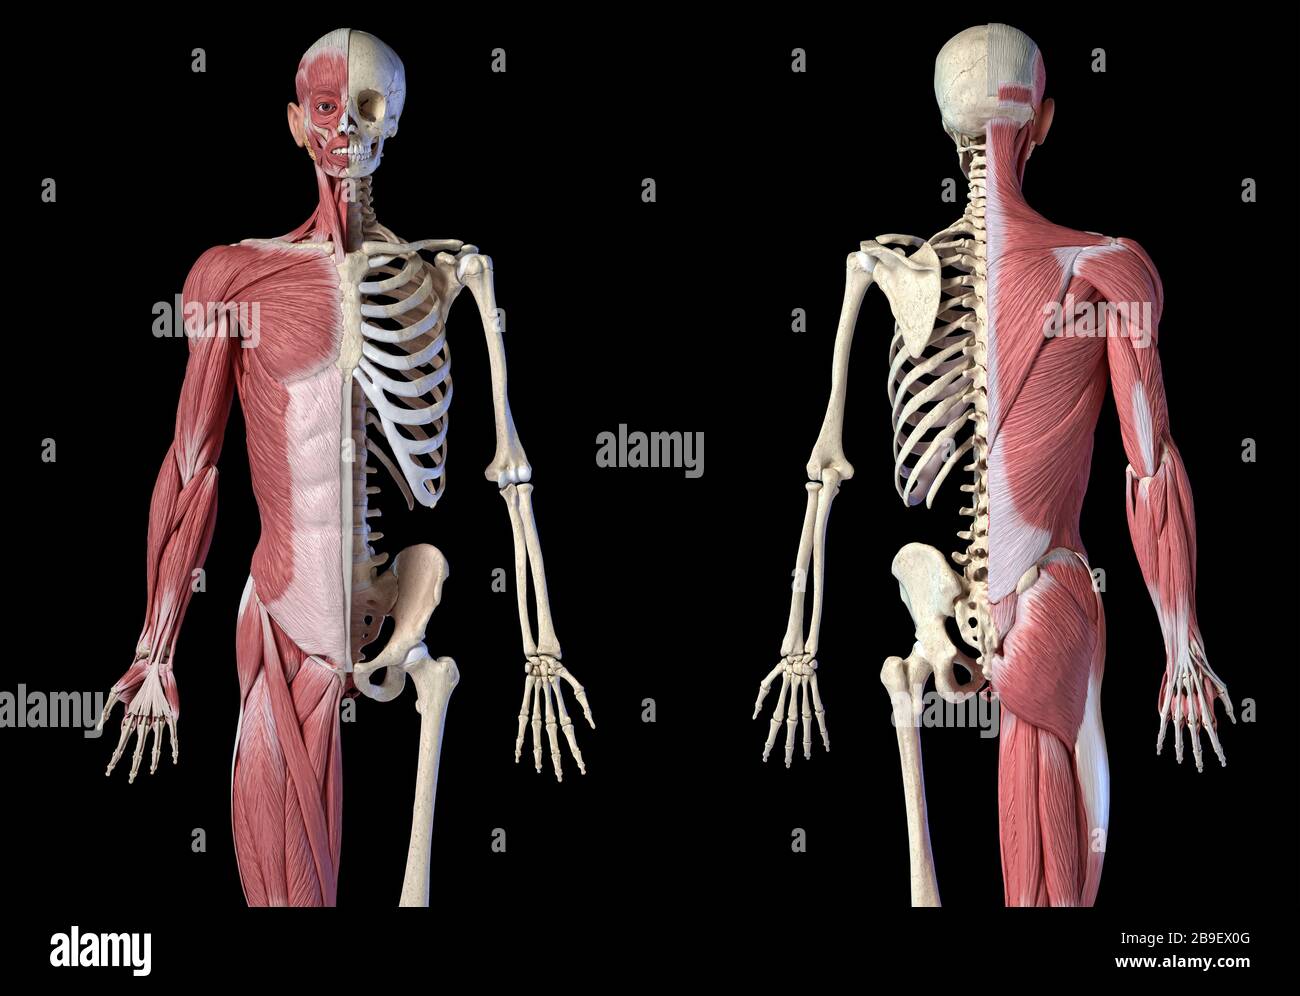 Oberkörper männliche Anatomie von Muskel- und Skelettsystemen, schwarzer Hintergrund. Stockfoto